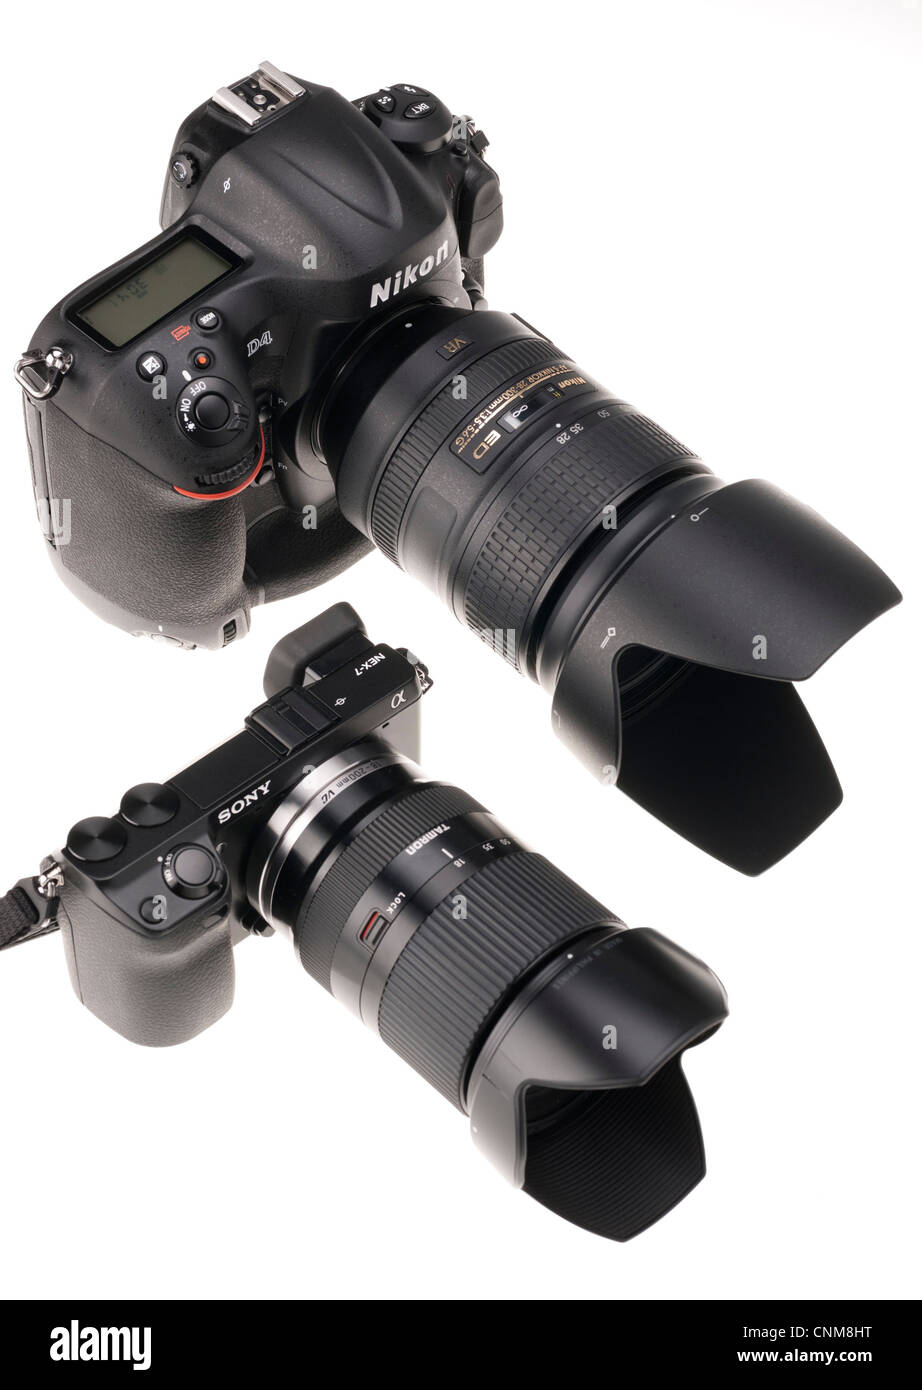 Le matériel photographique - Nikon D4 avec objectif 28-300mm vu à côté de Sony NEX-7 avec 18-50mm (même gamme). Banque D'Images